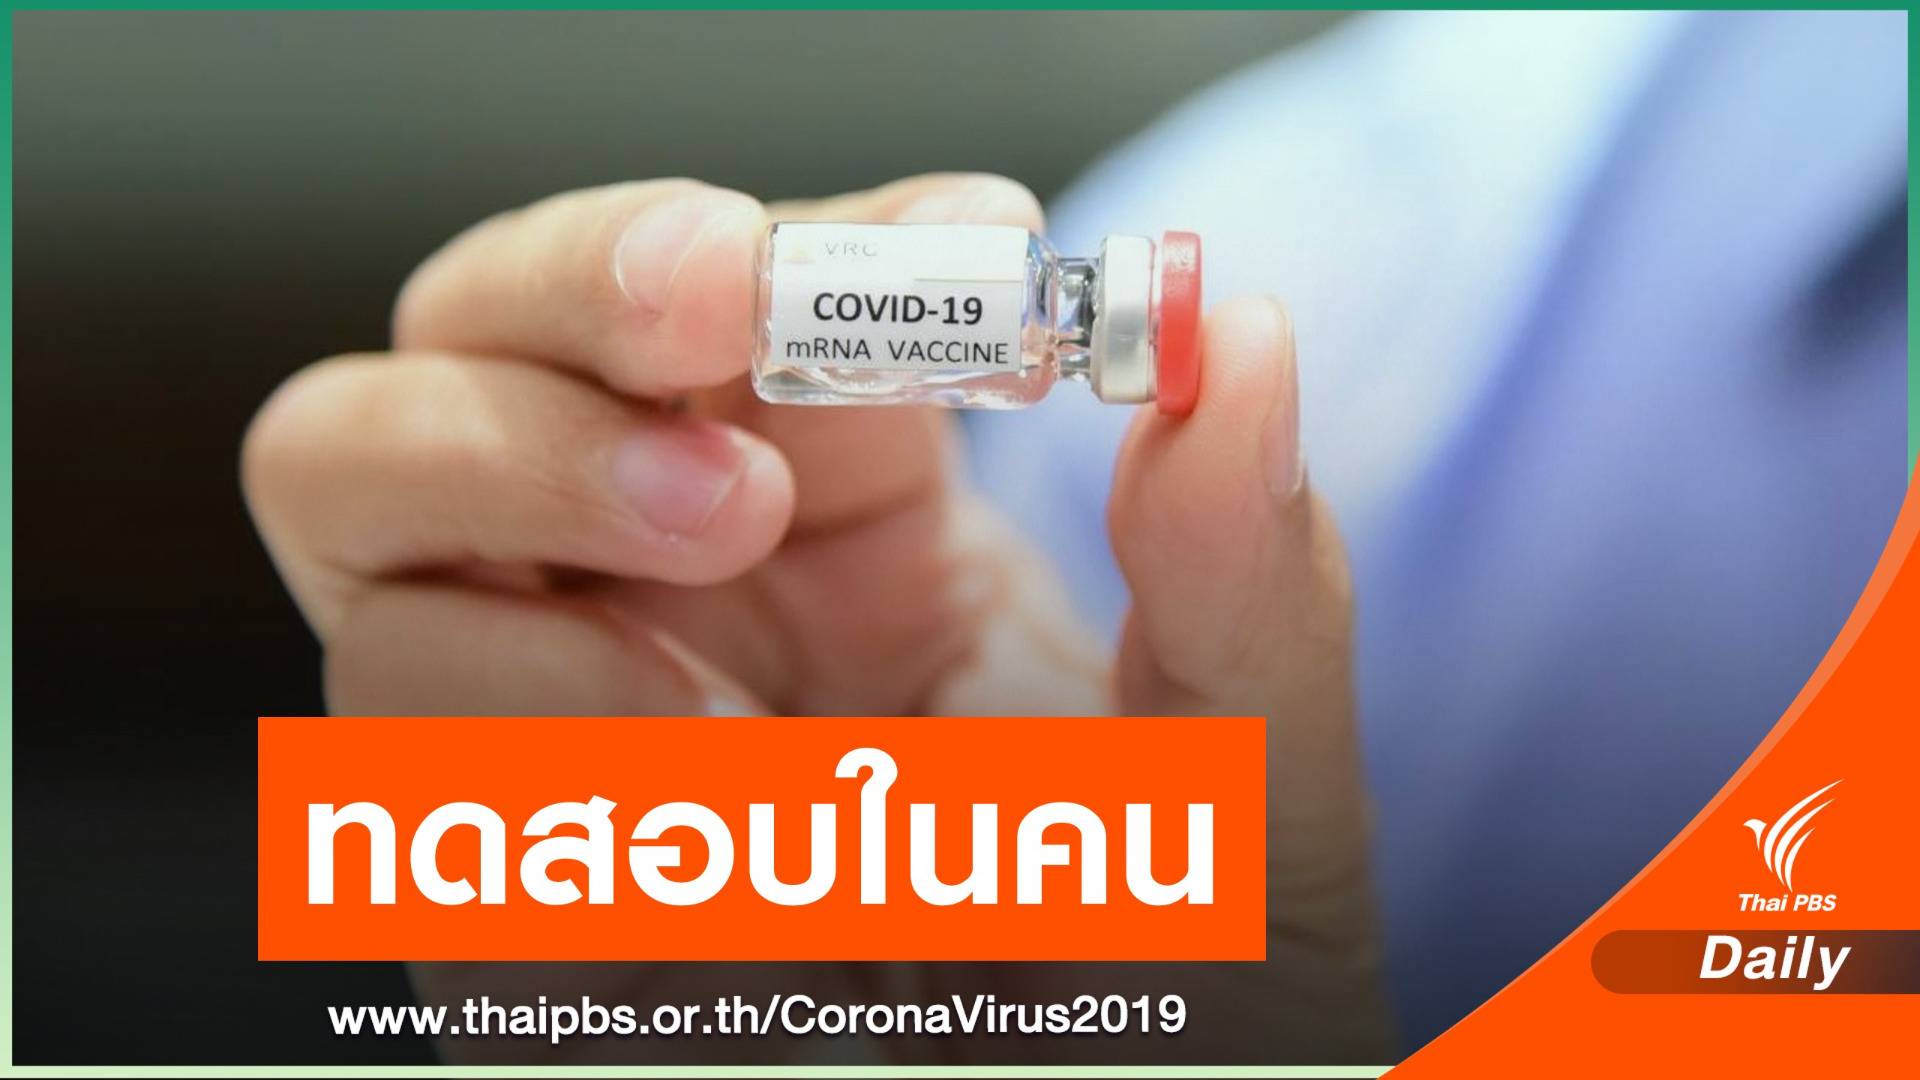 ต.ค.นี้ไทยเตรียมทดสอบวัคซีน COVID-19  เข็มแรกในคน 